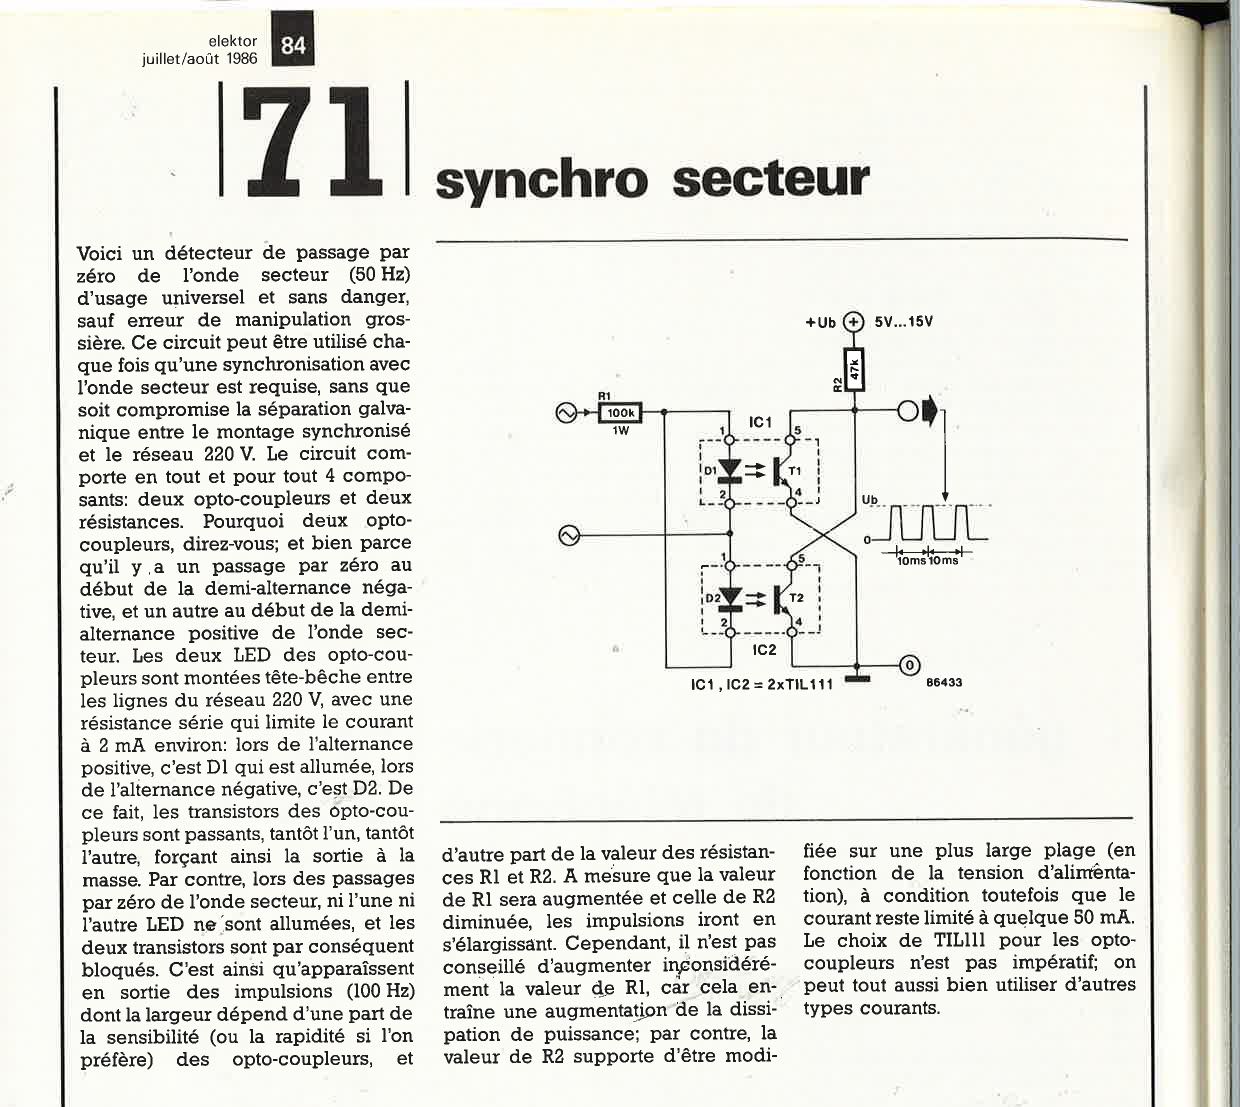 Synchro secteur